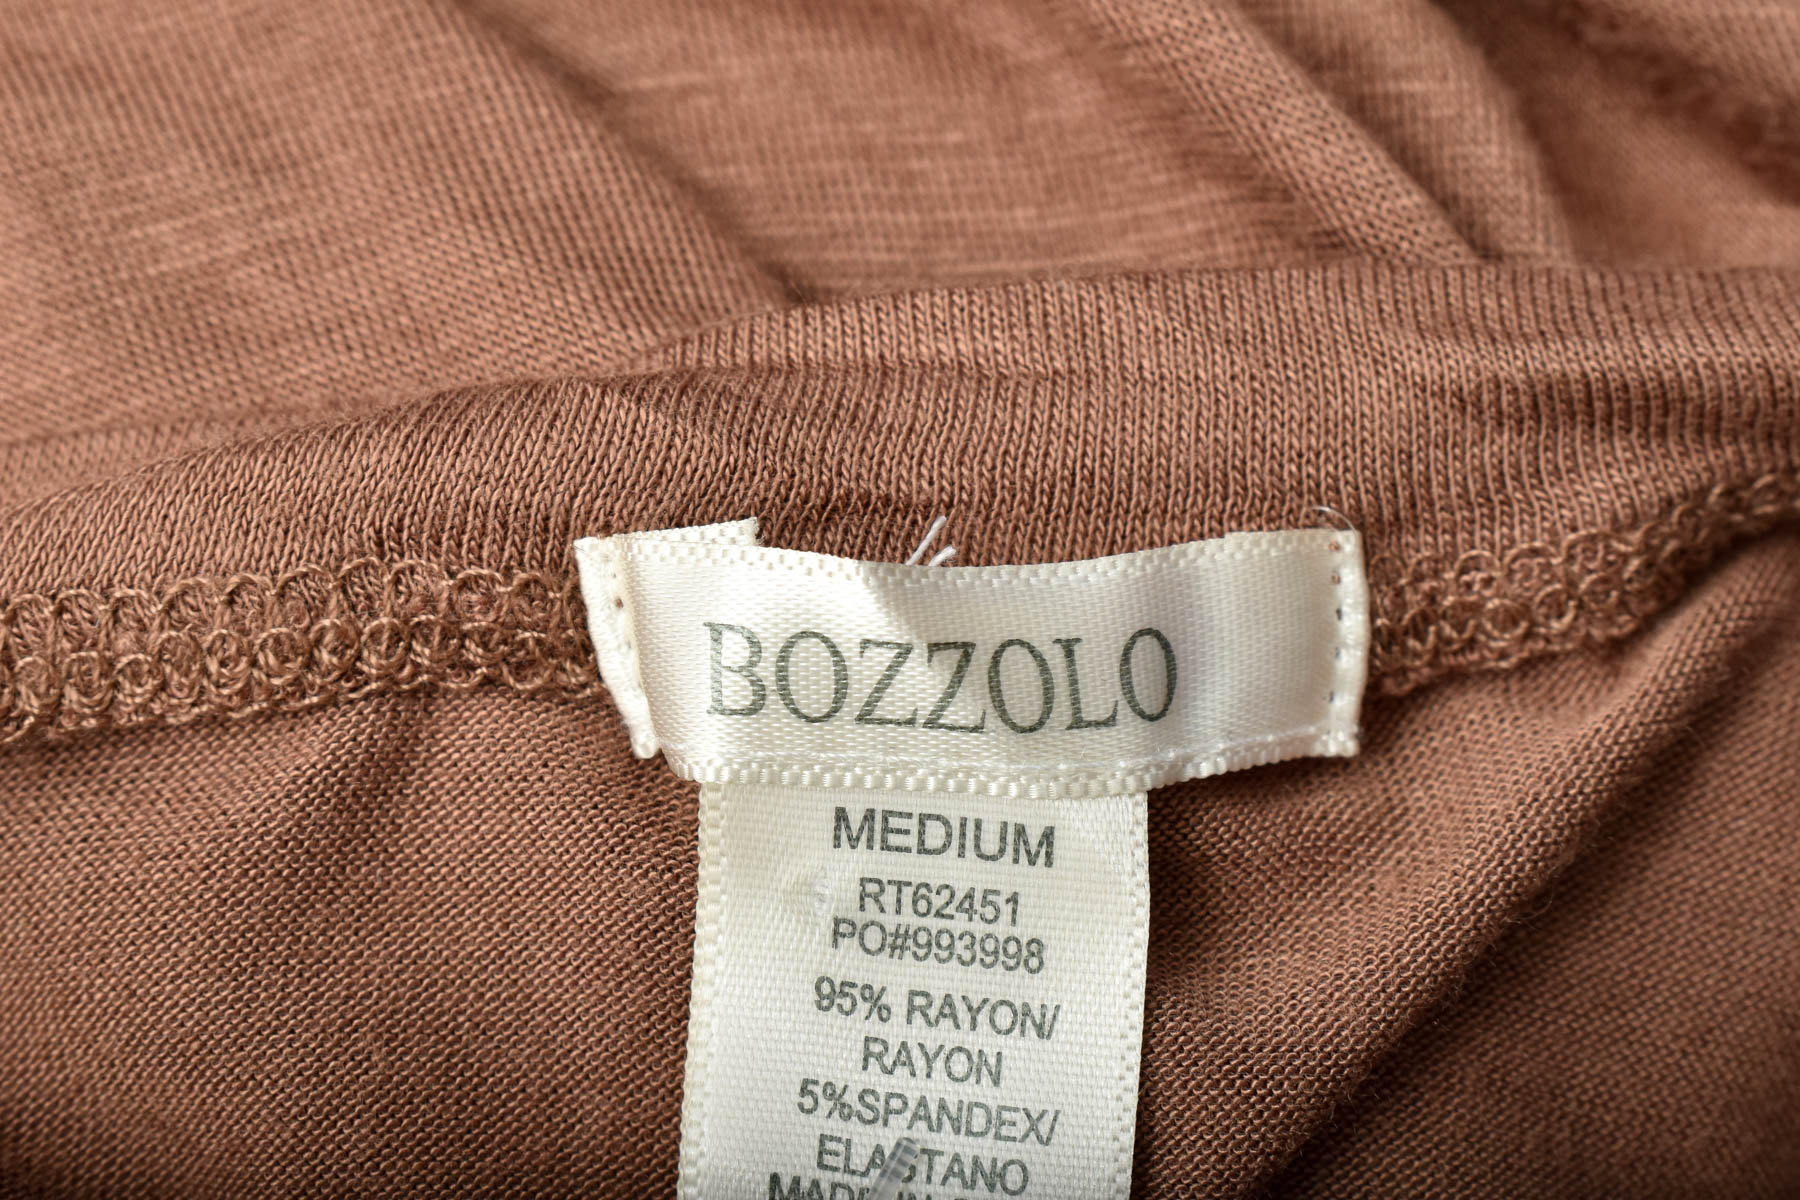 Bluza de damă - Bozzolo - 2